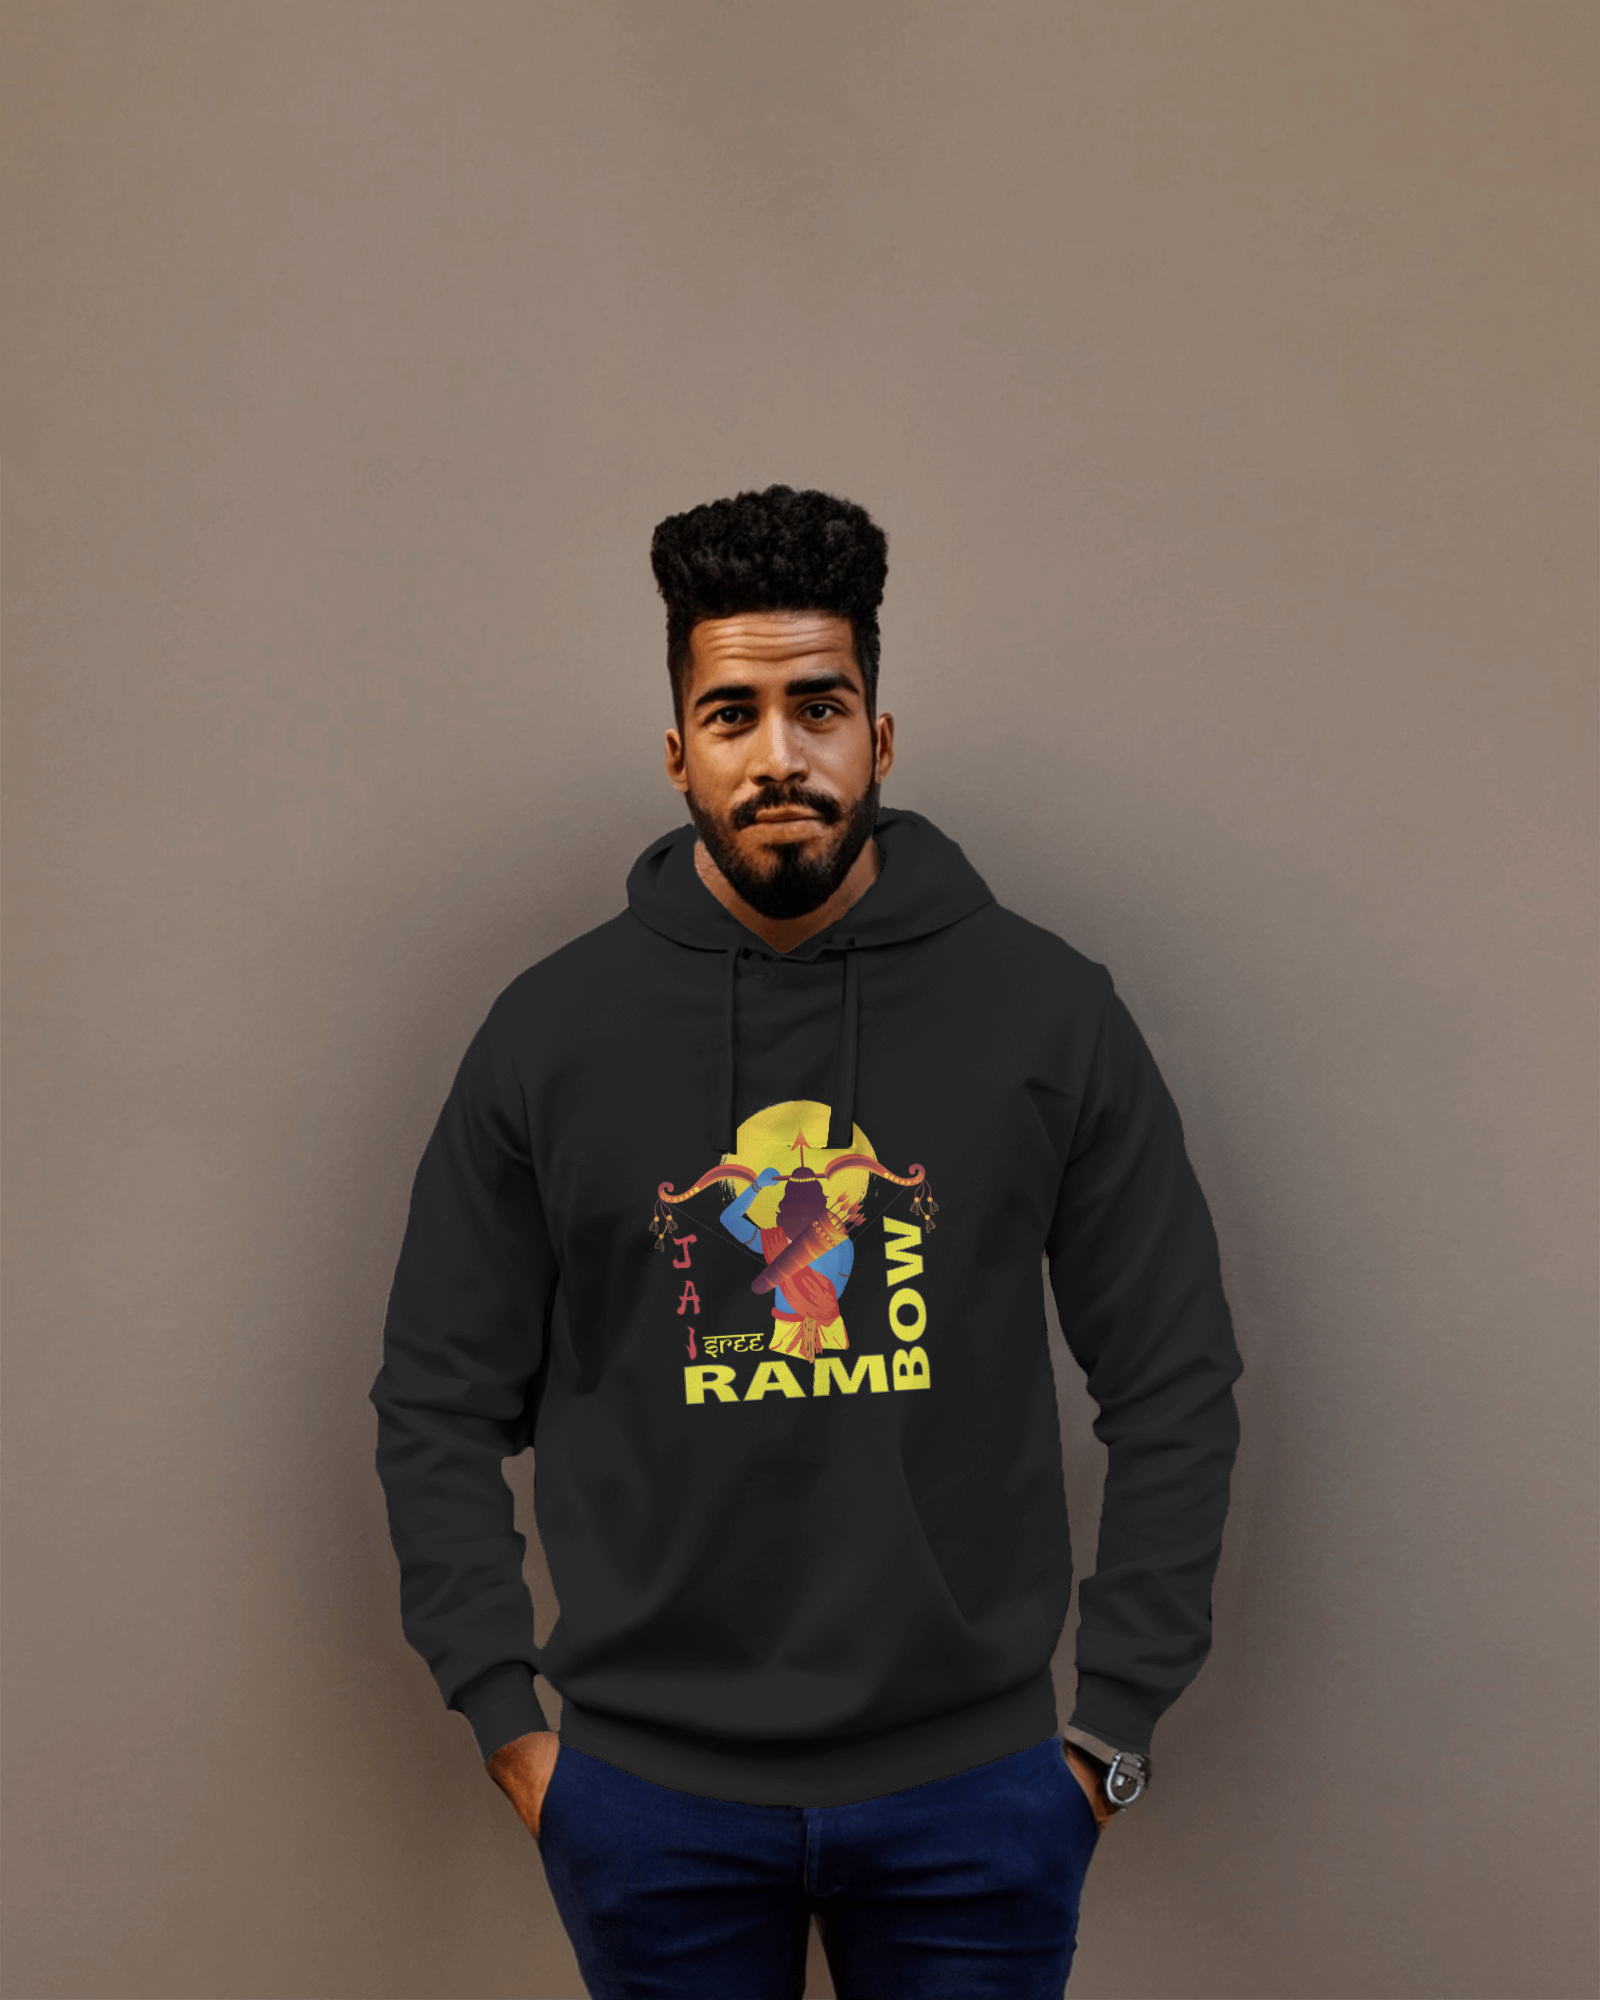 #ramboo Printed hoodies